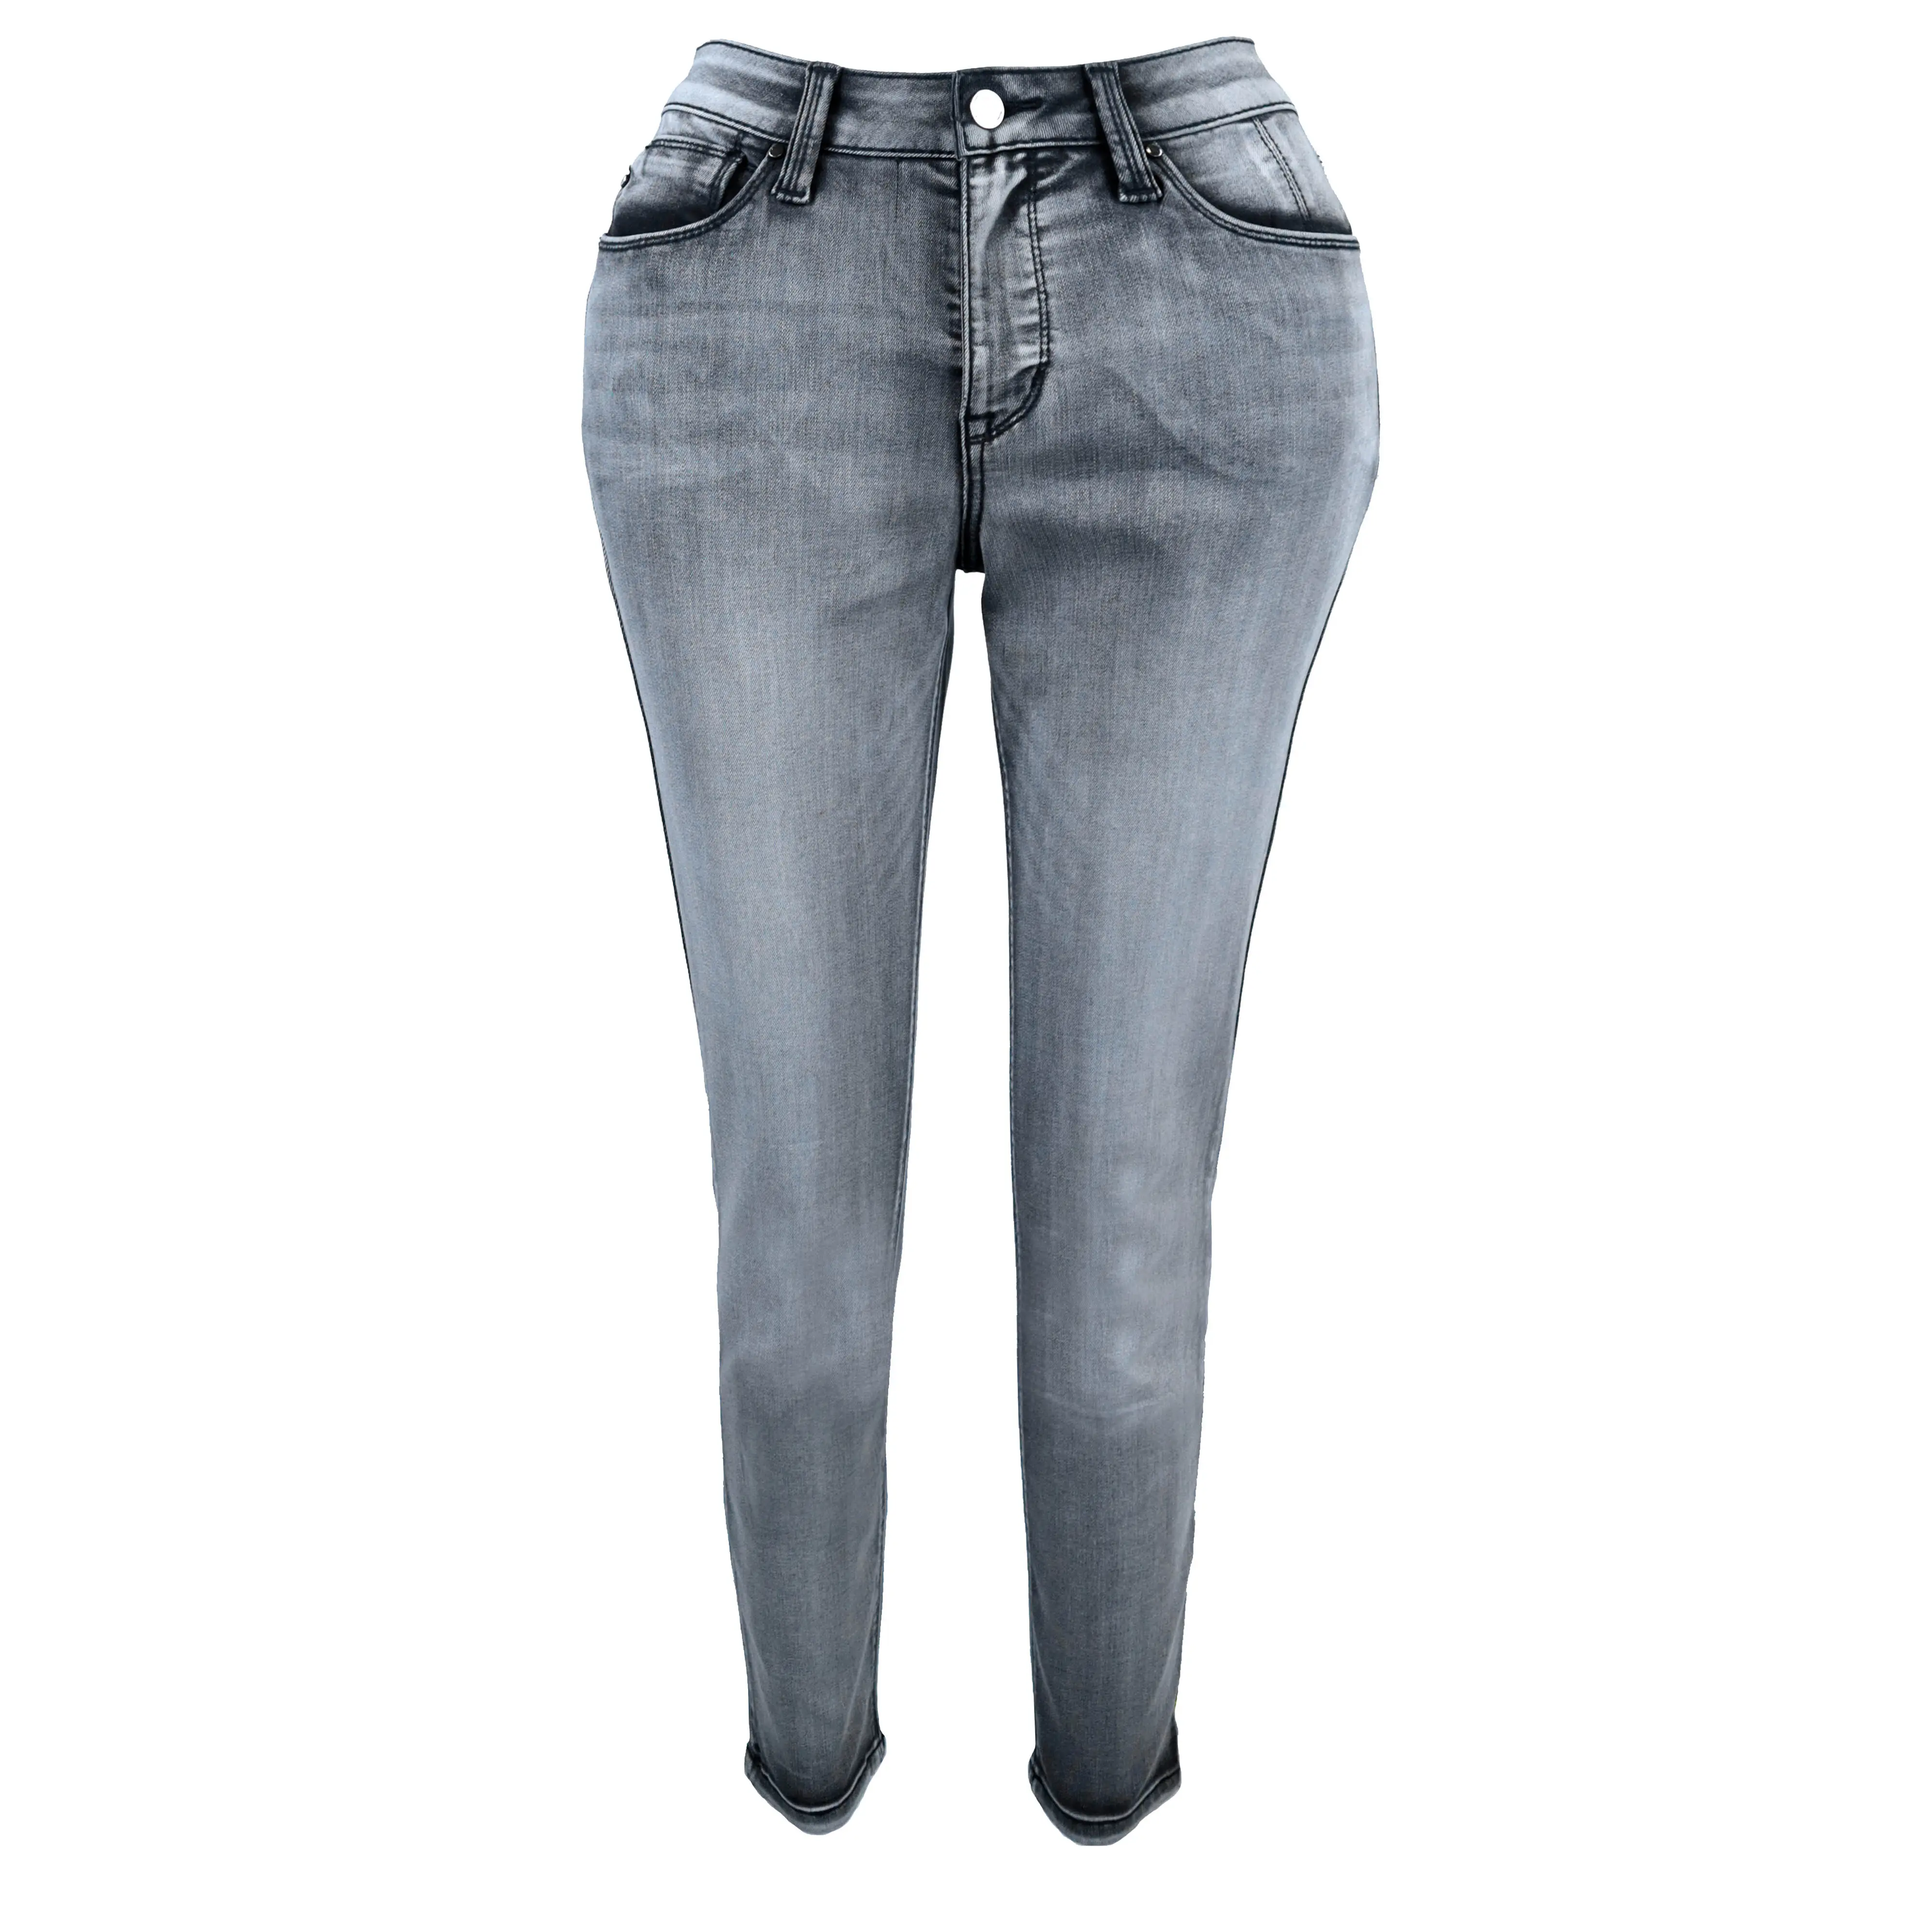 Jeans Colombia grosir pinggang tinggi pengangkat bokong Push Up tinggi tinggi kulit Colombianos ketat wanita anak perempuan Jeans abu-abu